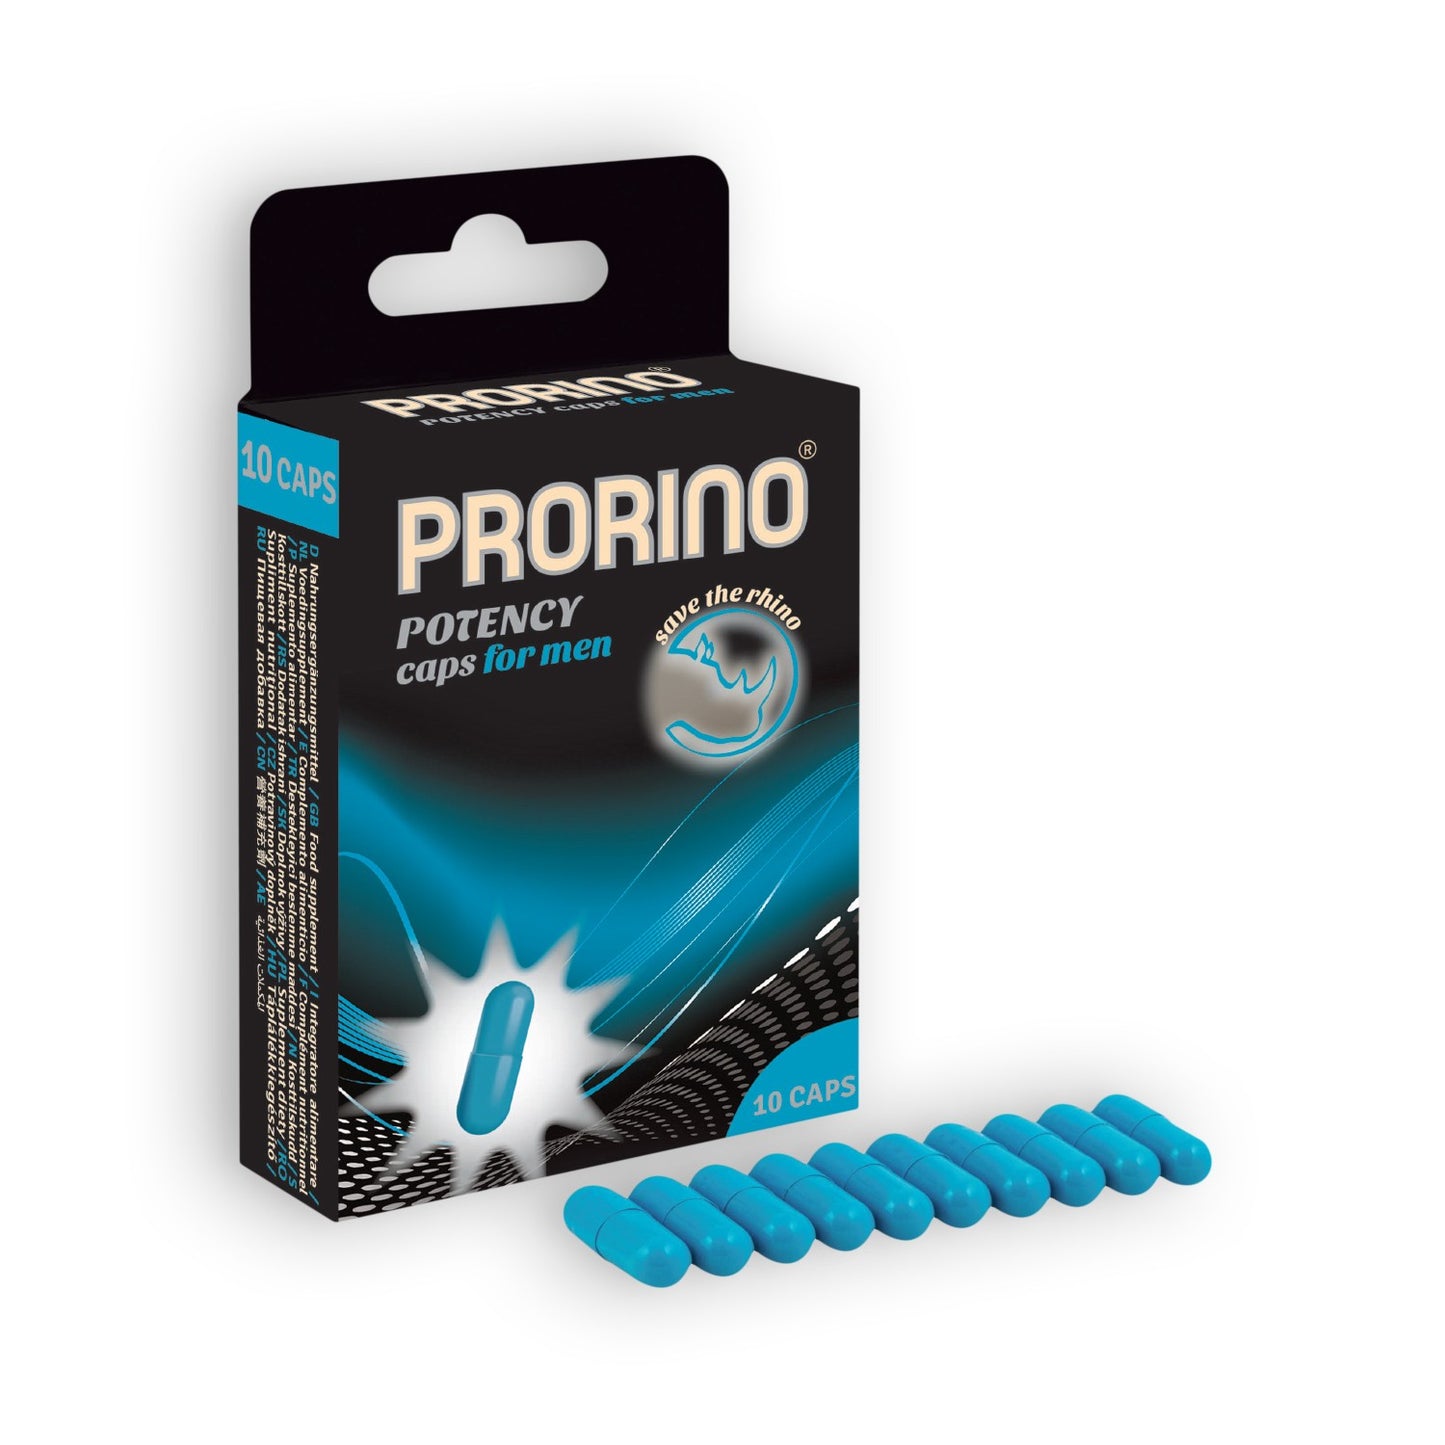 Prorino Potency caps for men